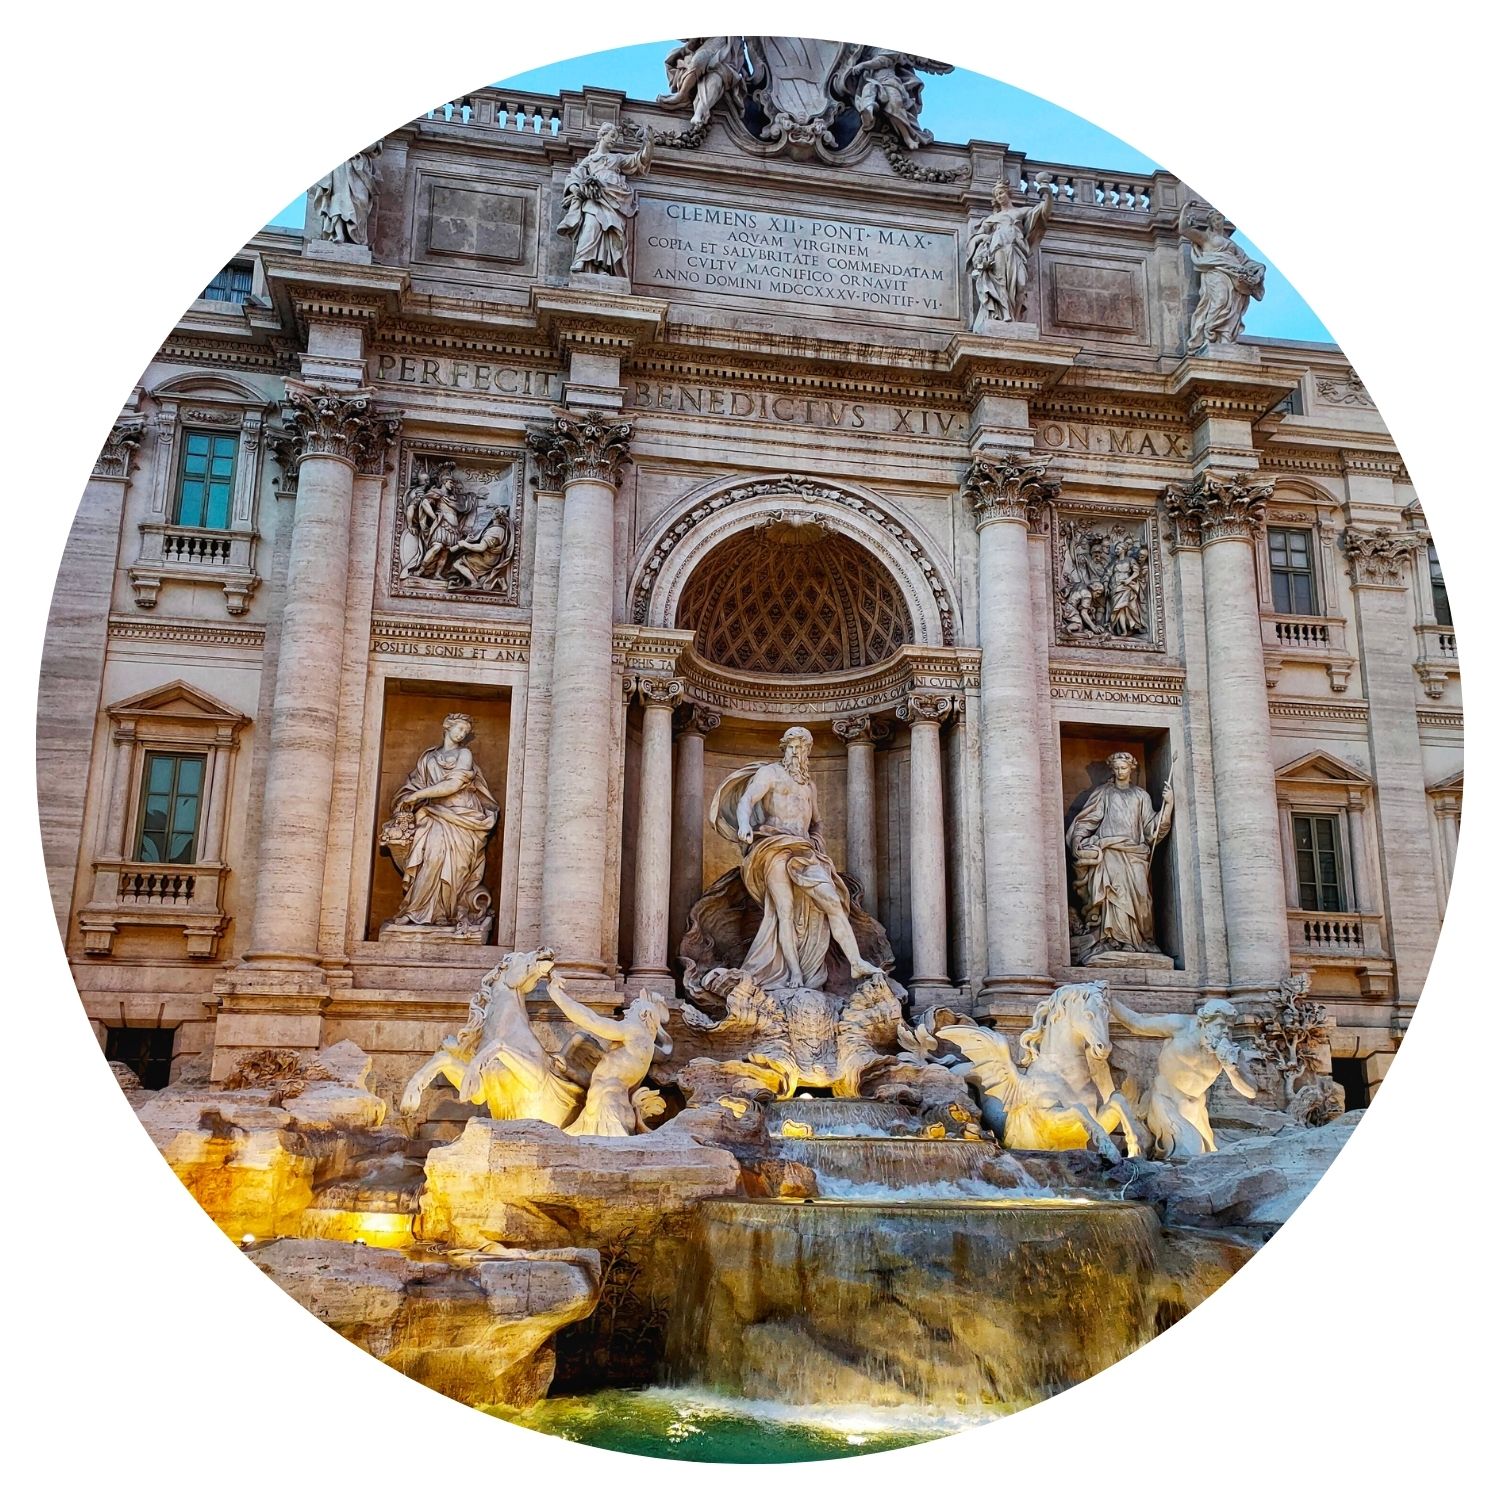 La célèbre fontaine de Trevi à Rome, Italie, magnifiquement éclairée en soirée, avec ses sculptures détaillées et son architecture baroque.